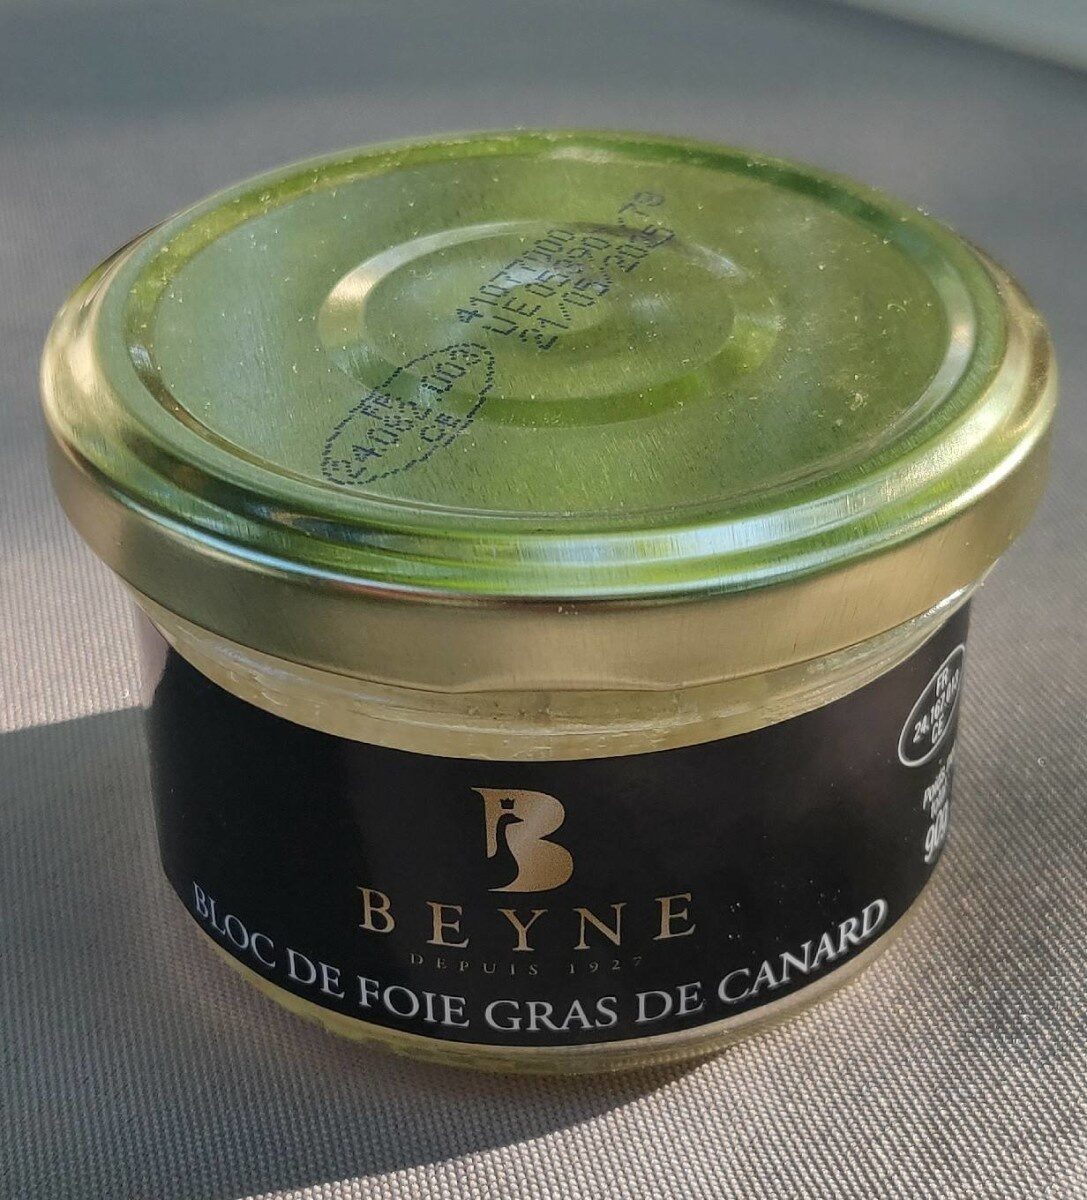 Bloc de foie gras de canard - Produit - fr